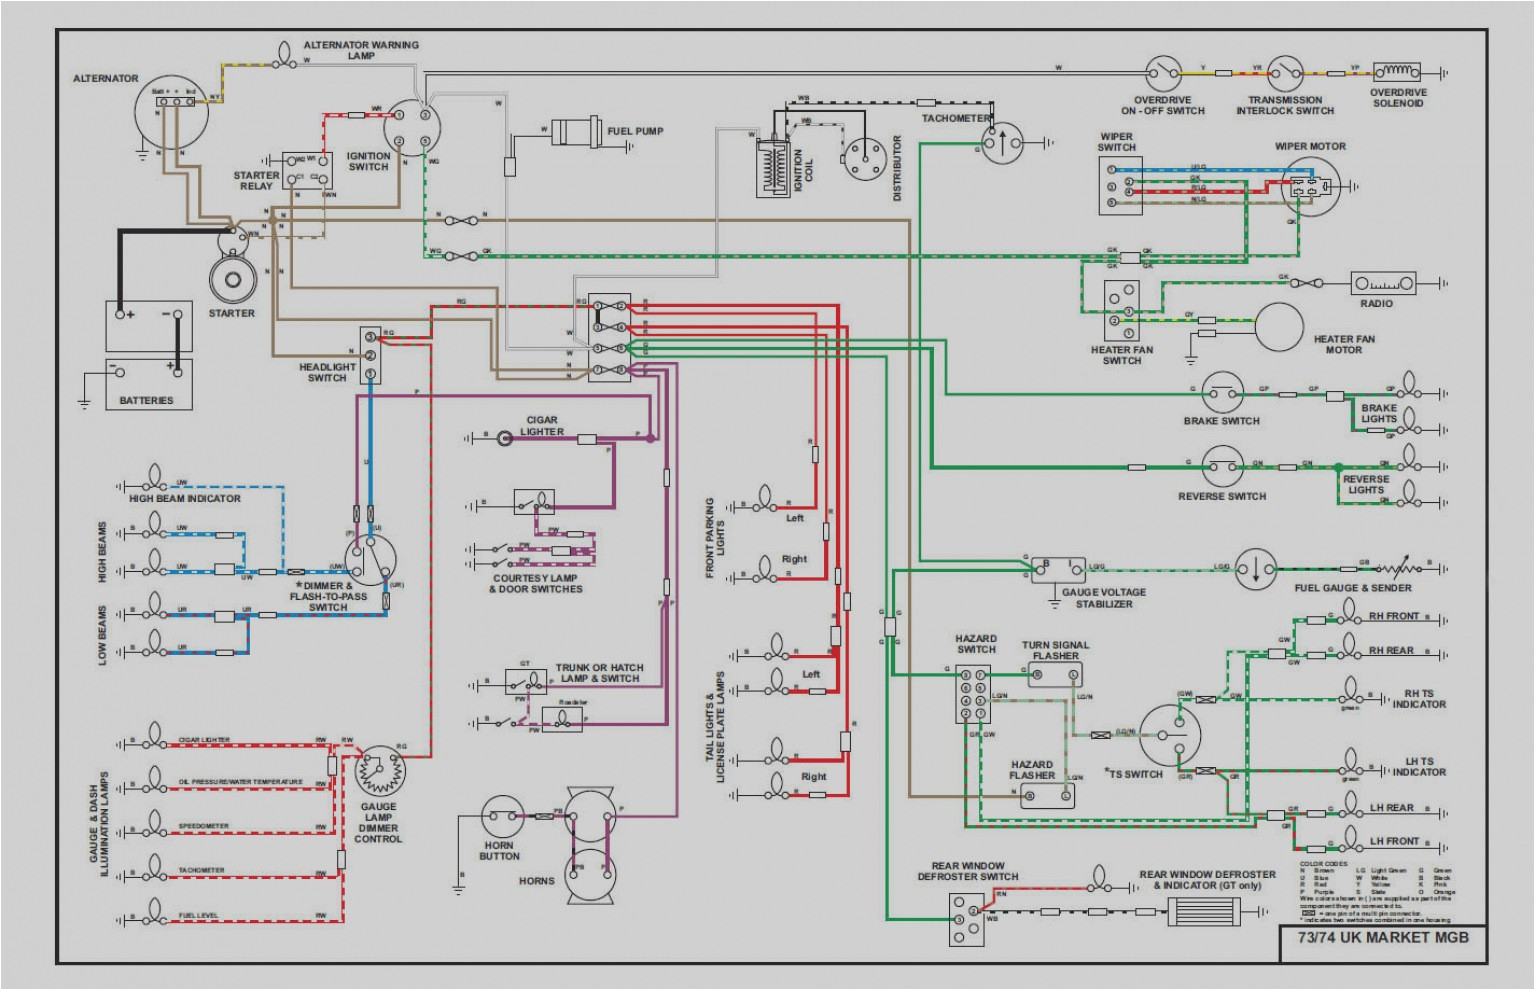 1979 mgb wiring diagram free picture schematic wiring diagram expert 1966 mgb wiring diagram free download schematic